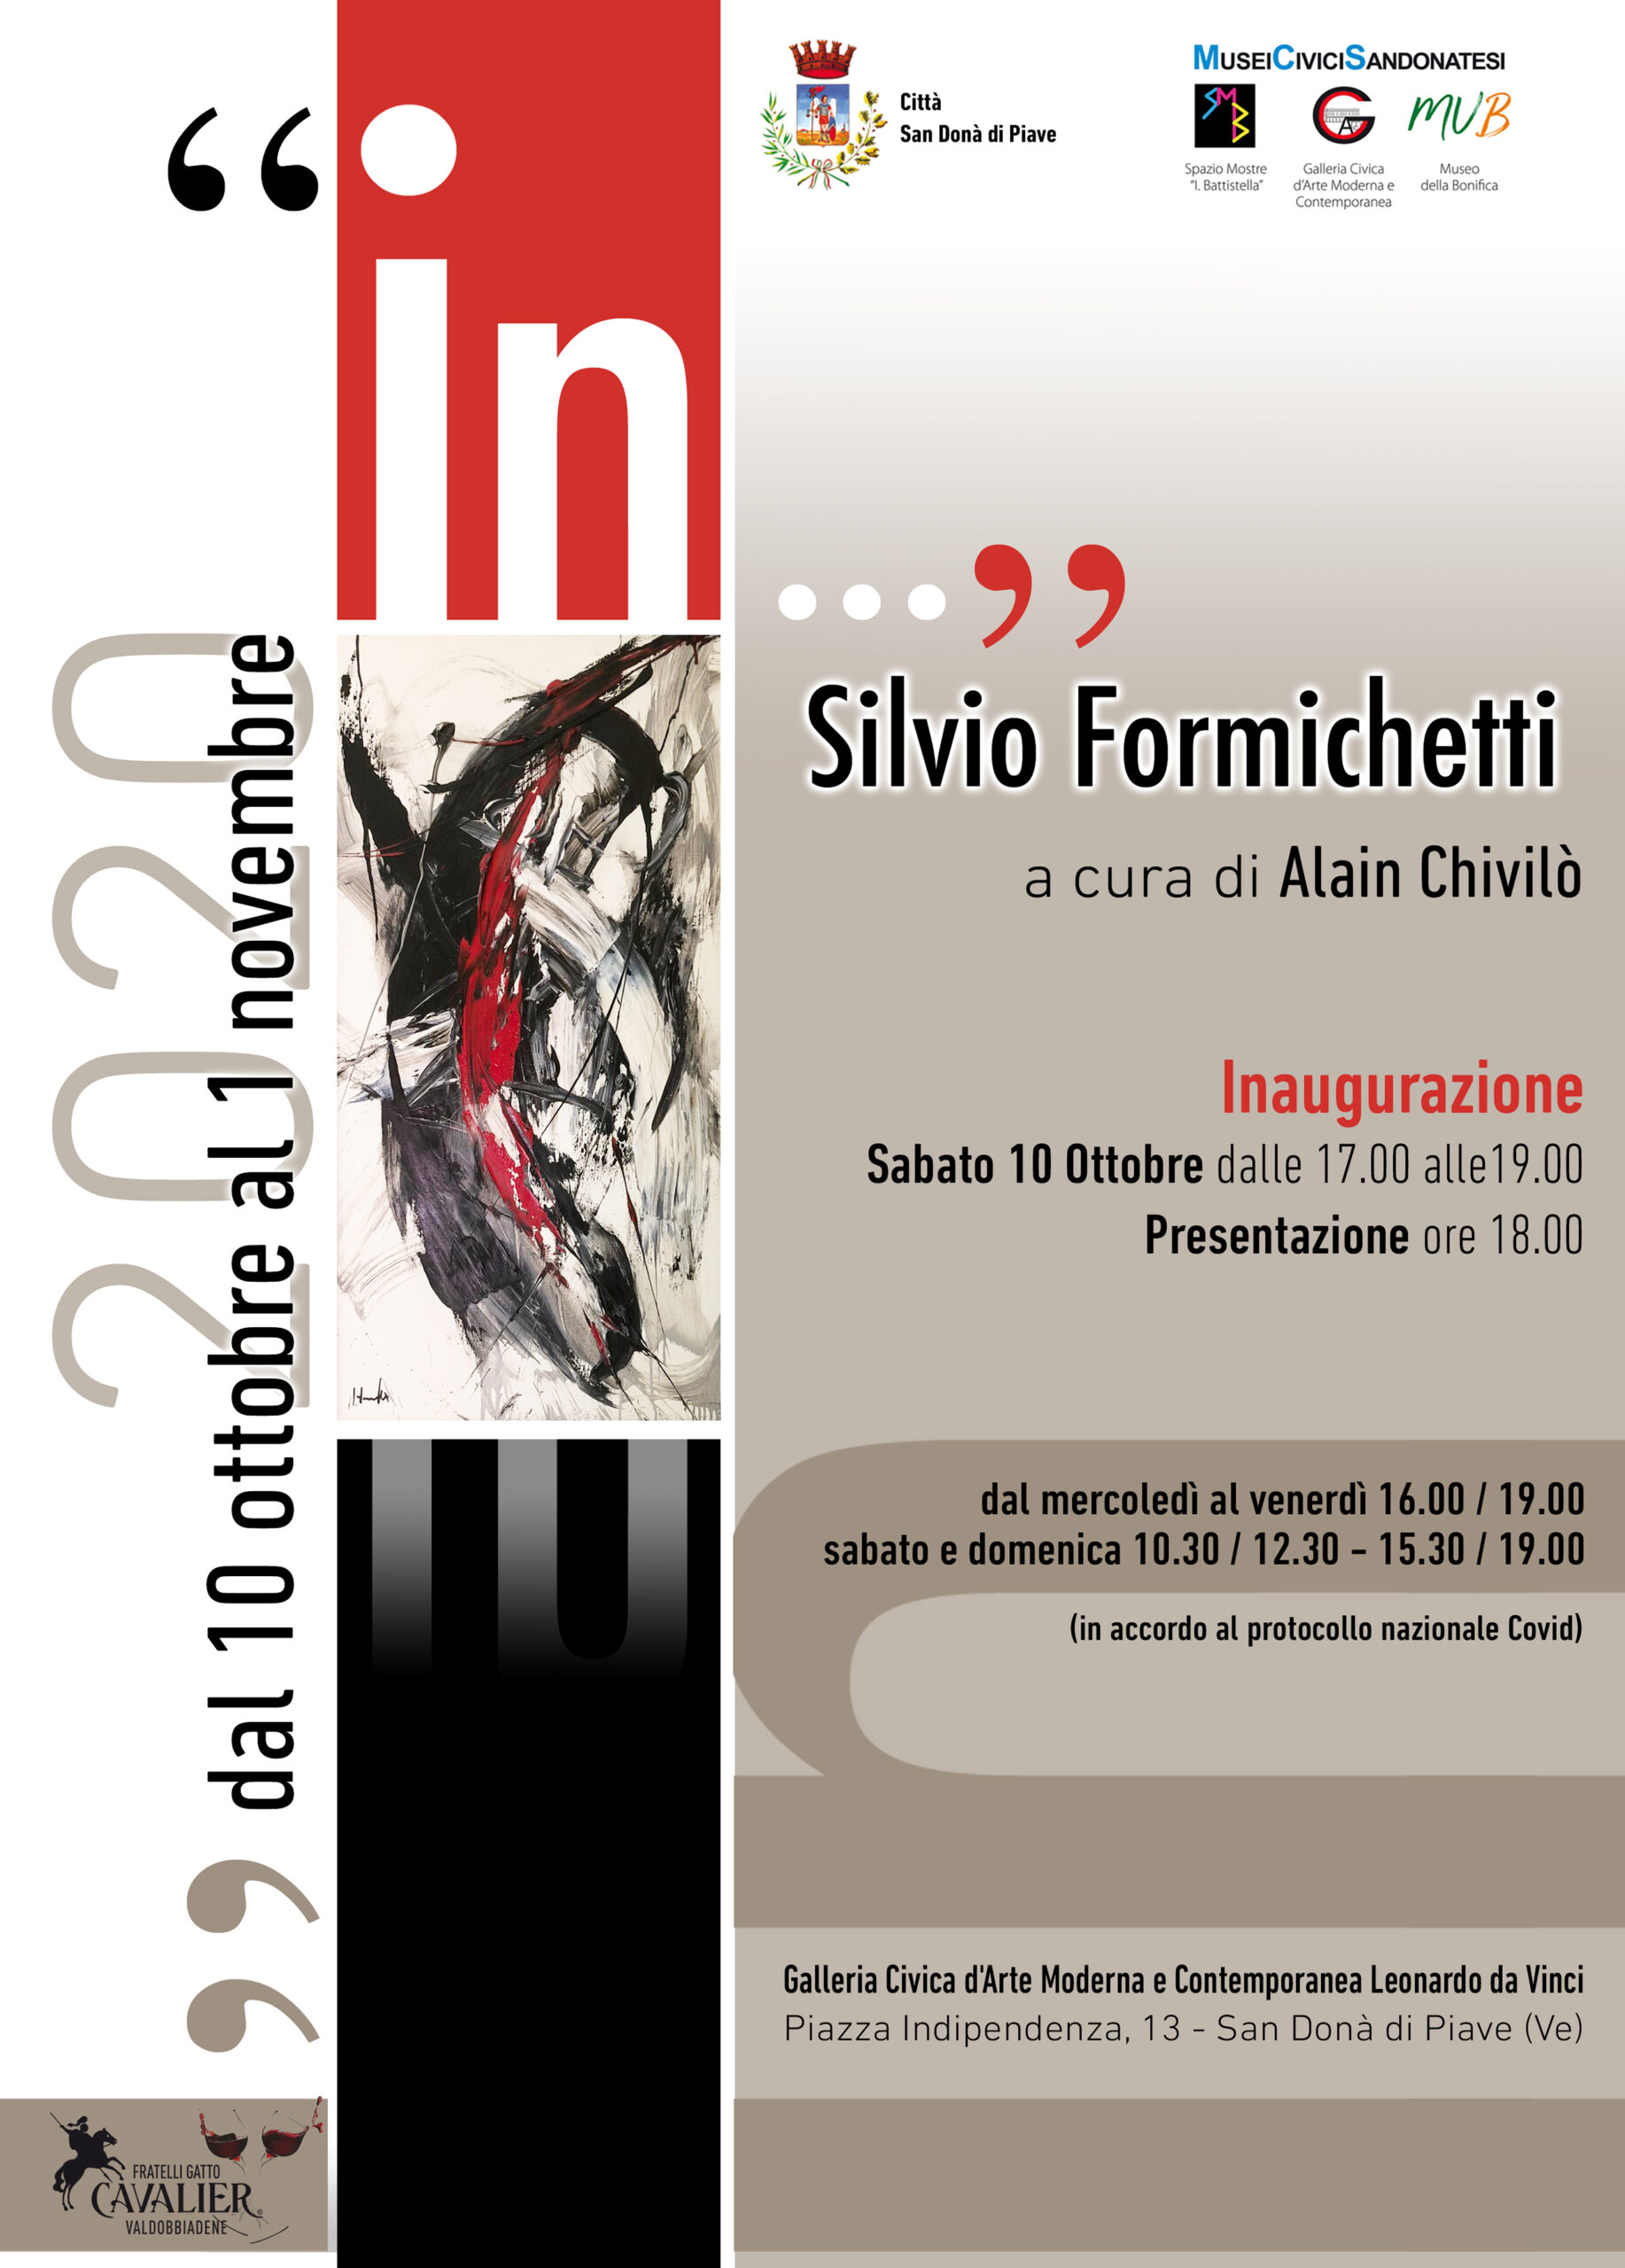 Silvio Formichetti_ In_a cura di Alain Chivilo_ Galleria Civica San Donà di Piave